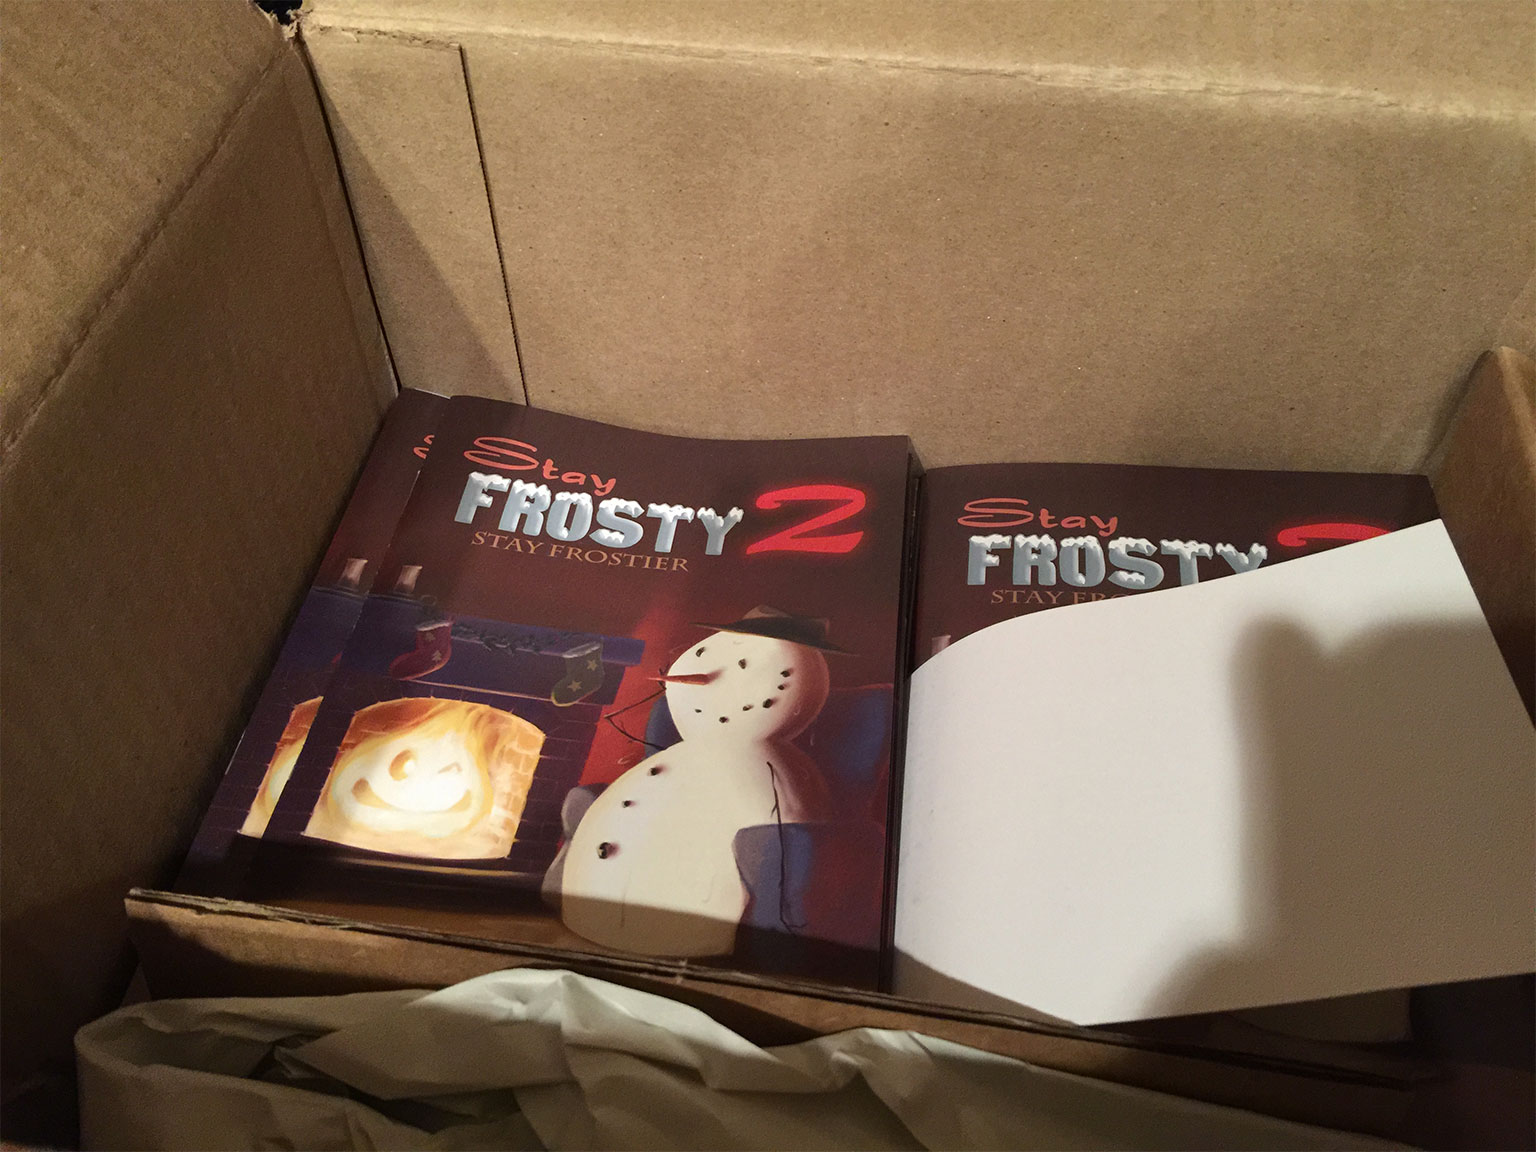 Stay-Frosty-2-Manuals-In-Box.jpg